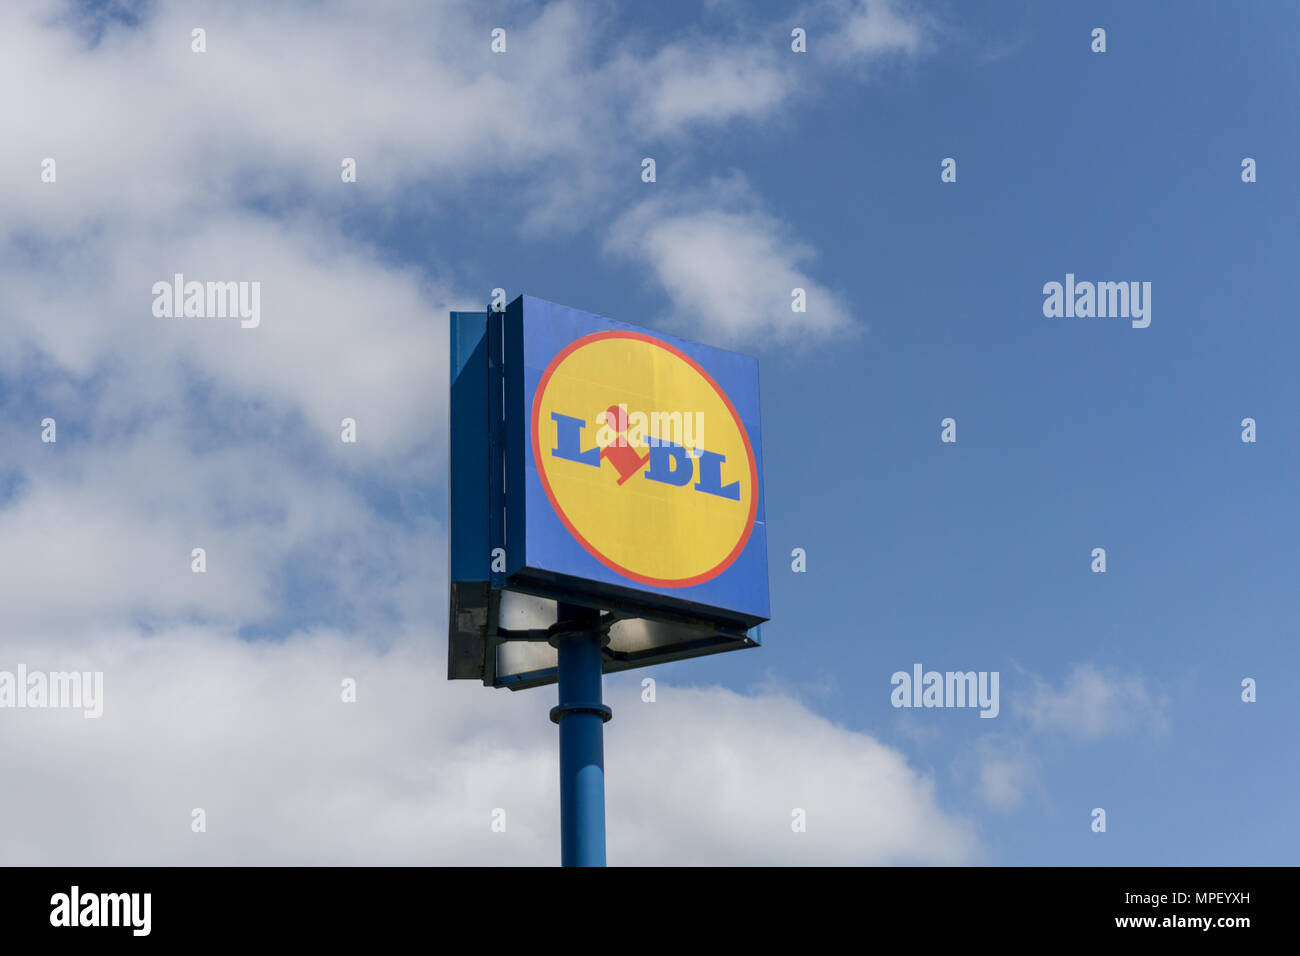 Zeichen für die deutschen Supermarkt Lidl, vor blauem Himmel, Rushden, Northamptonshire, Großbritannien Stockfoto